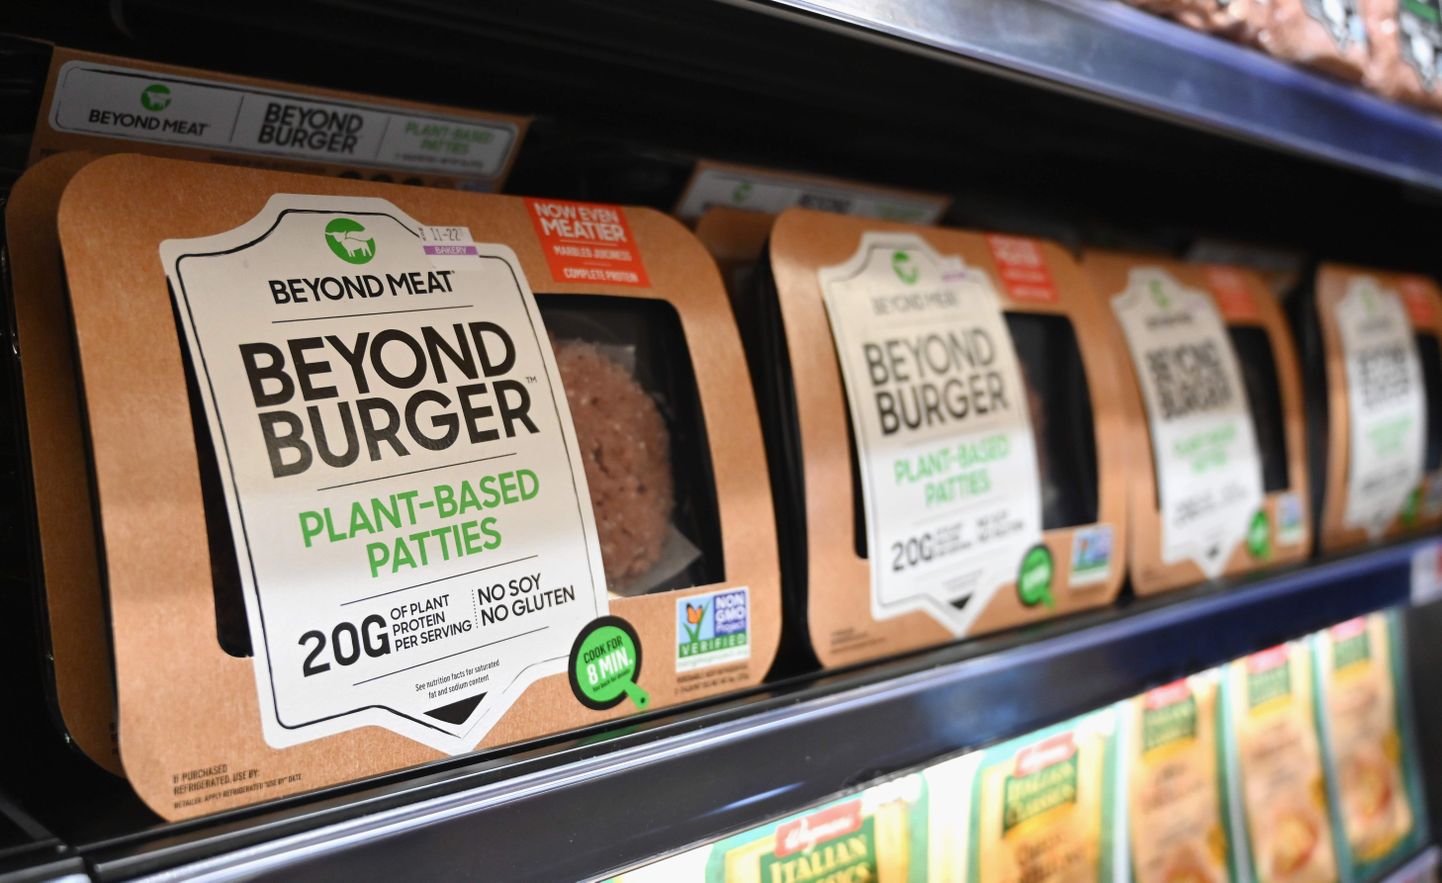 Beyond Meati taimepõhised burgeripihvid müügil New Yorgis.